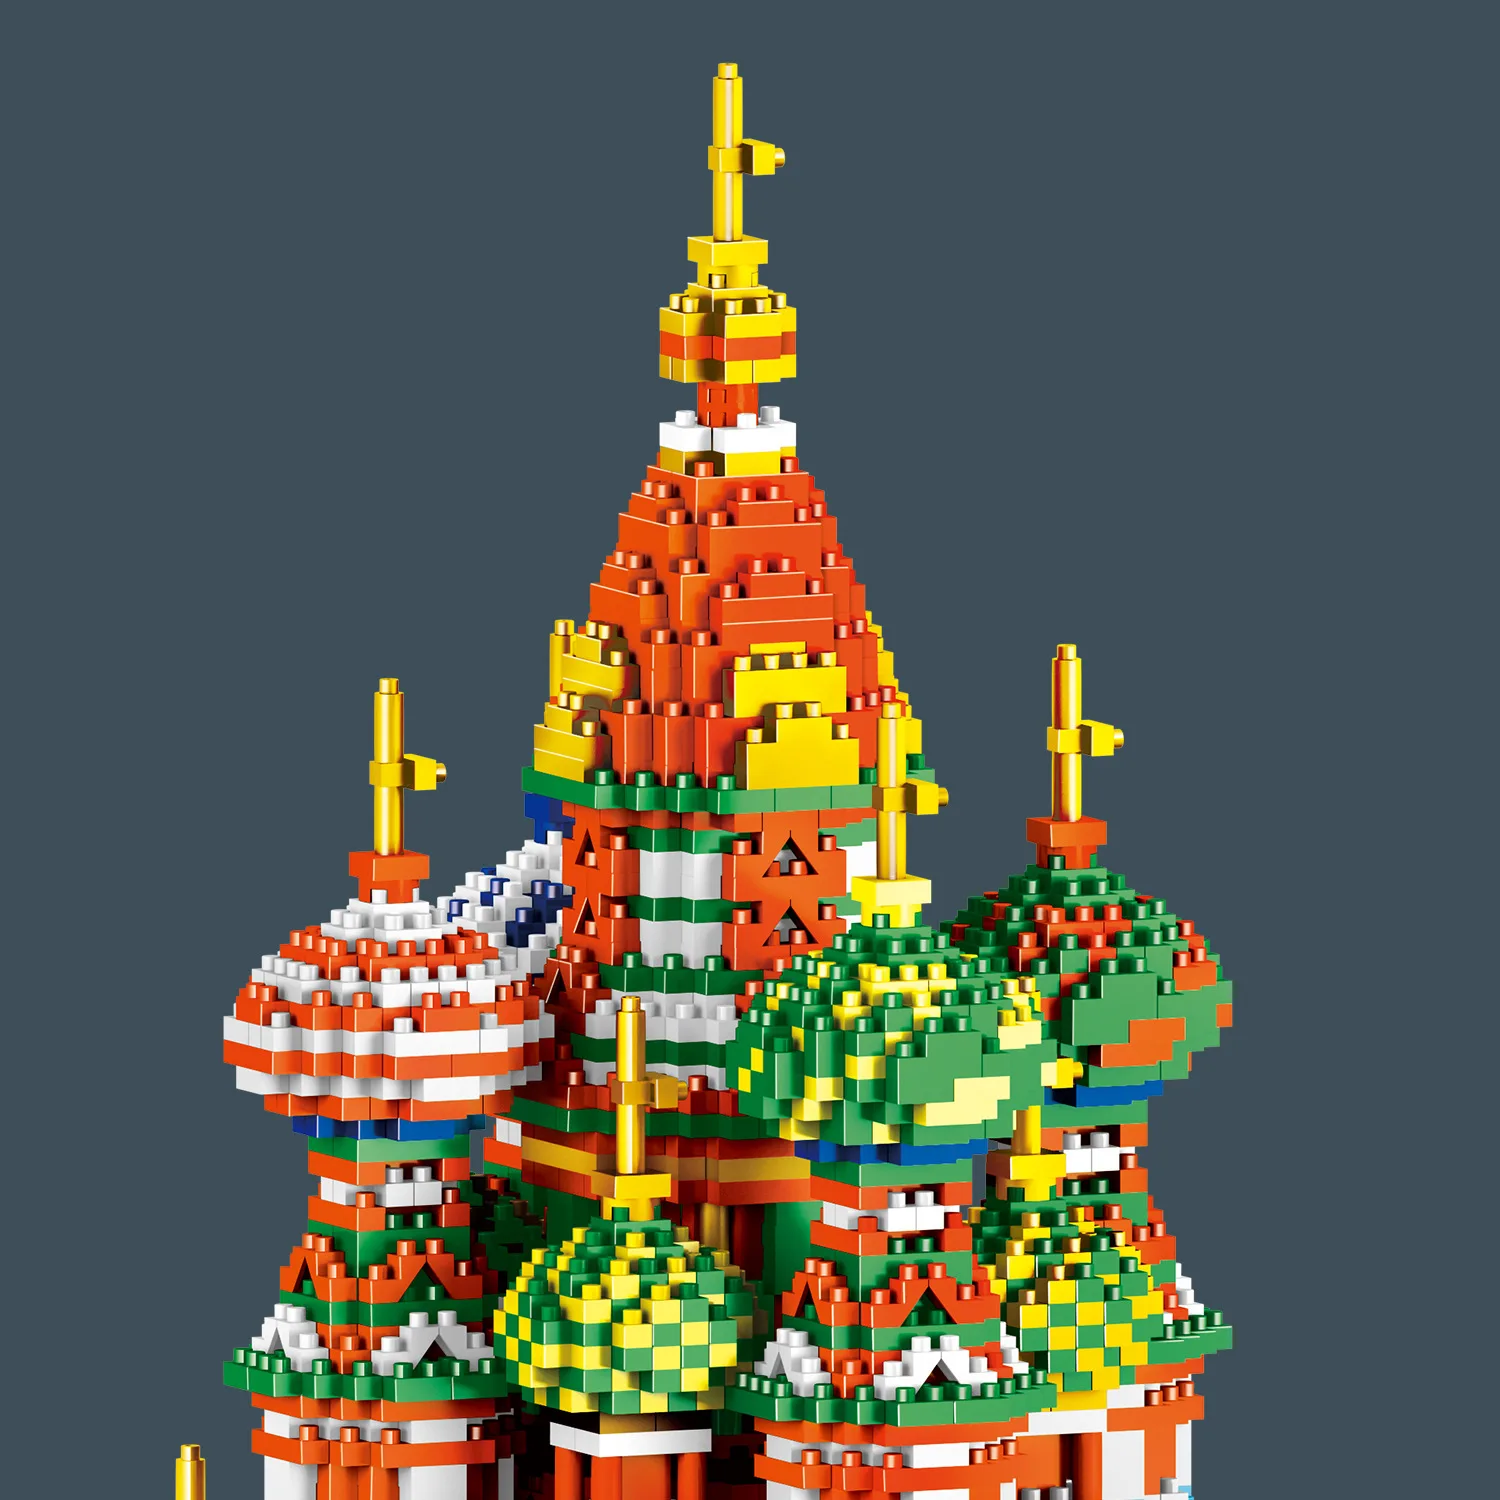 Lezi 8005 World Architecture Собор Василия Блаженного 3D модель Мини Алмазные блоки Кирпичи Строительная игрушка для детских подарков